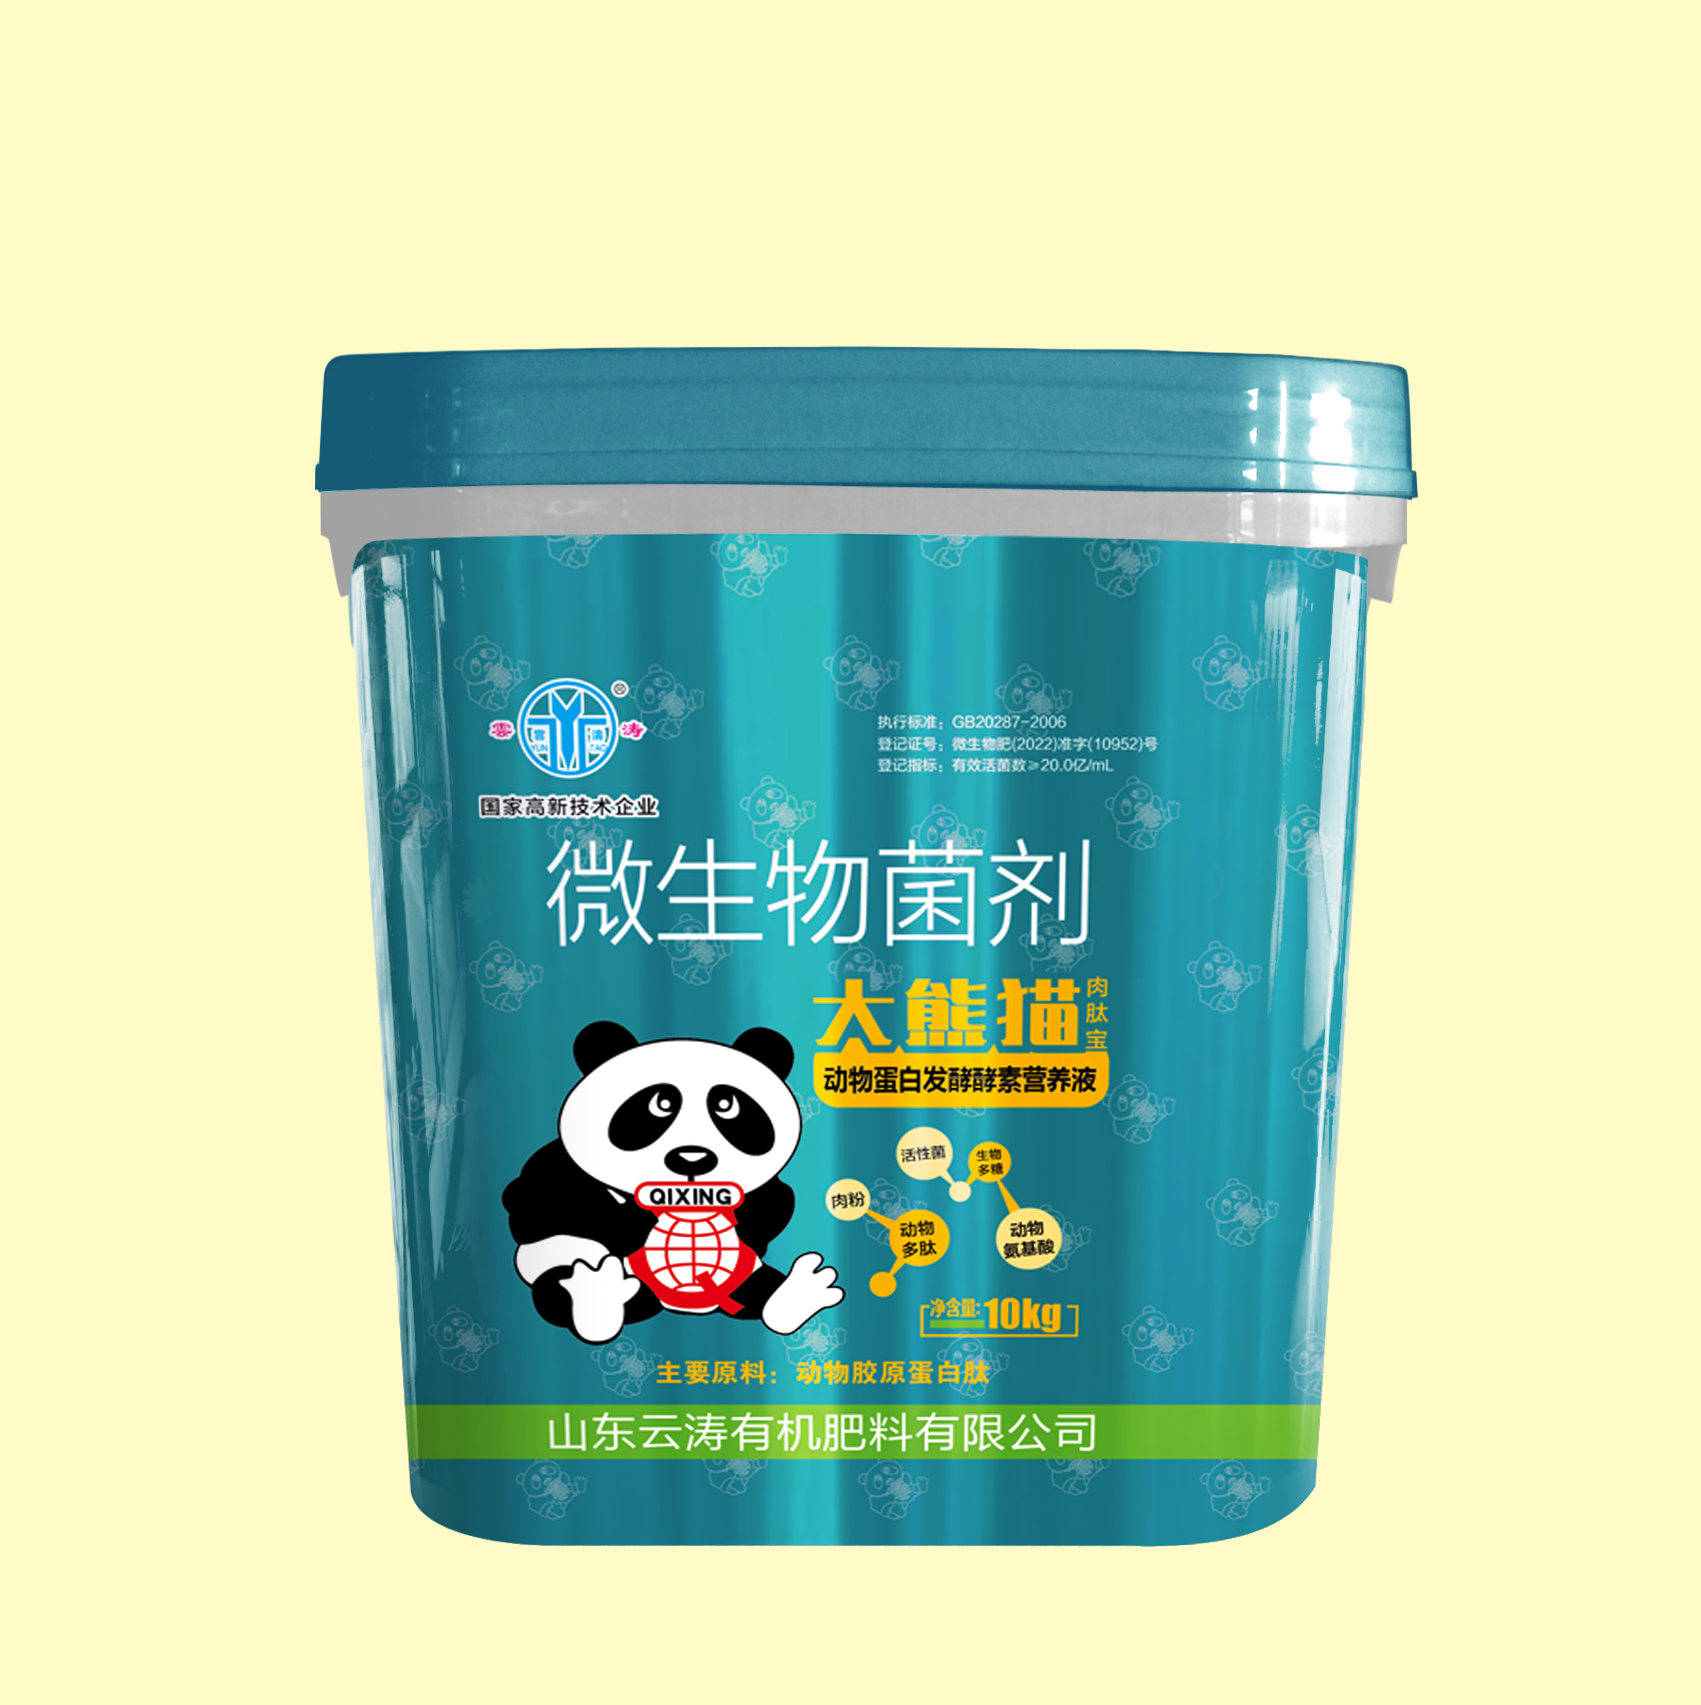 大熊猫包装桶.jpg